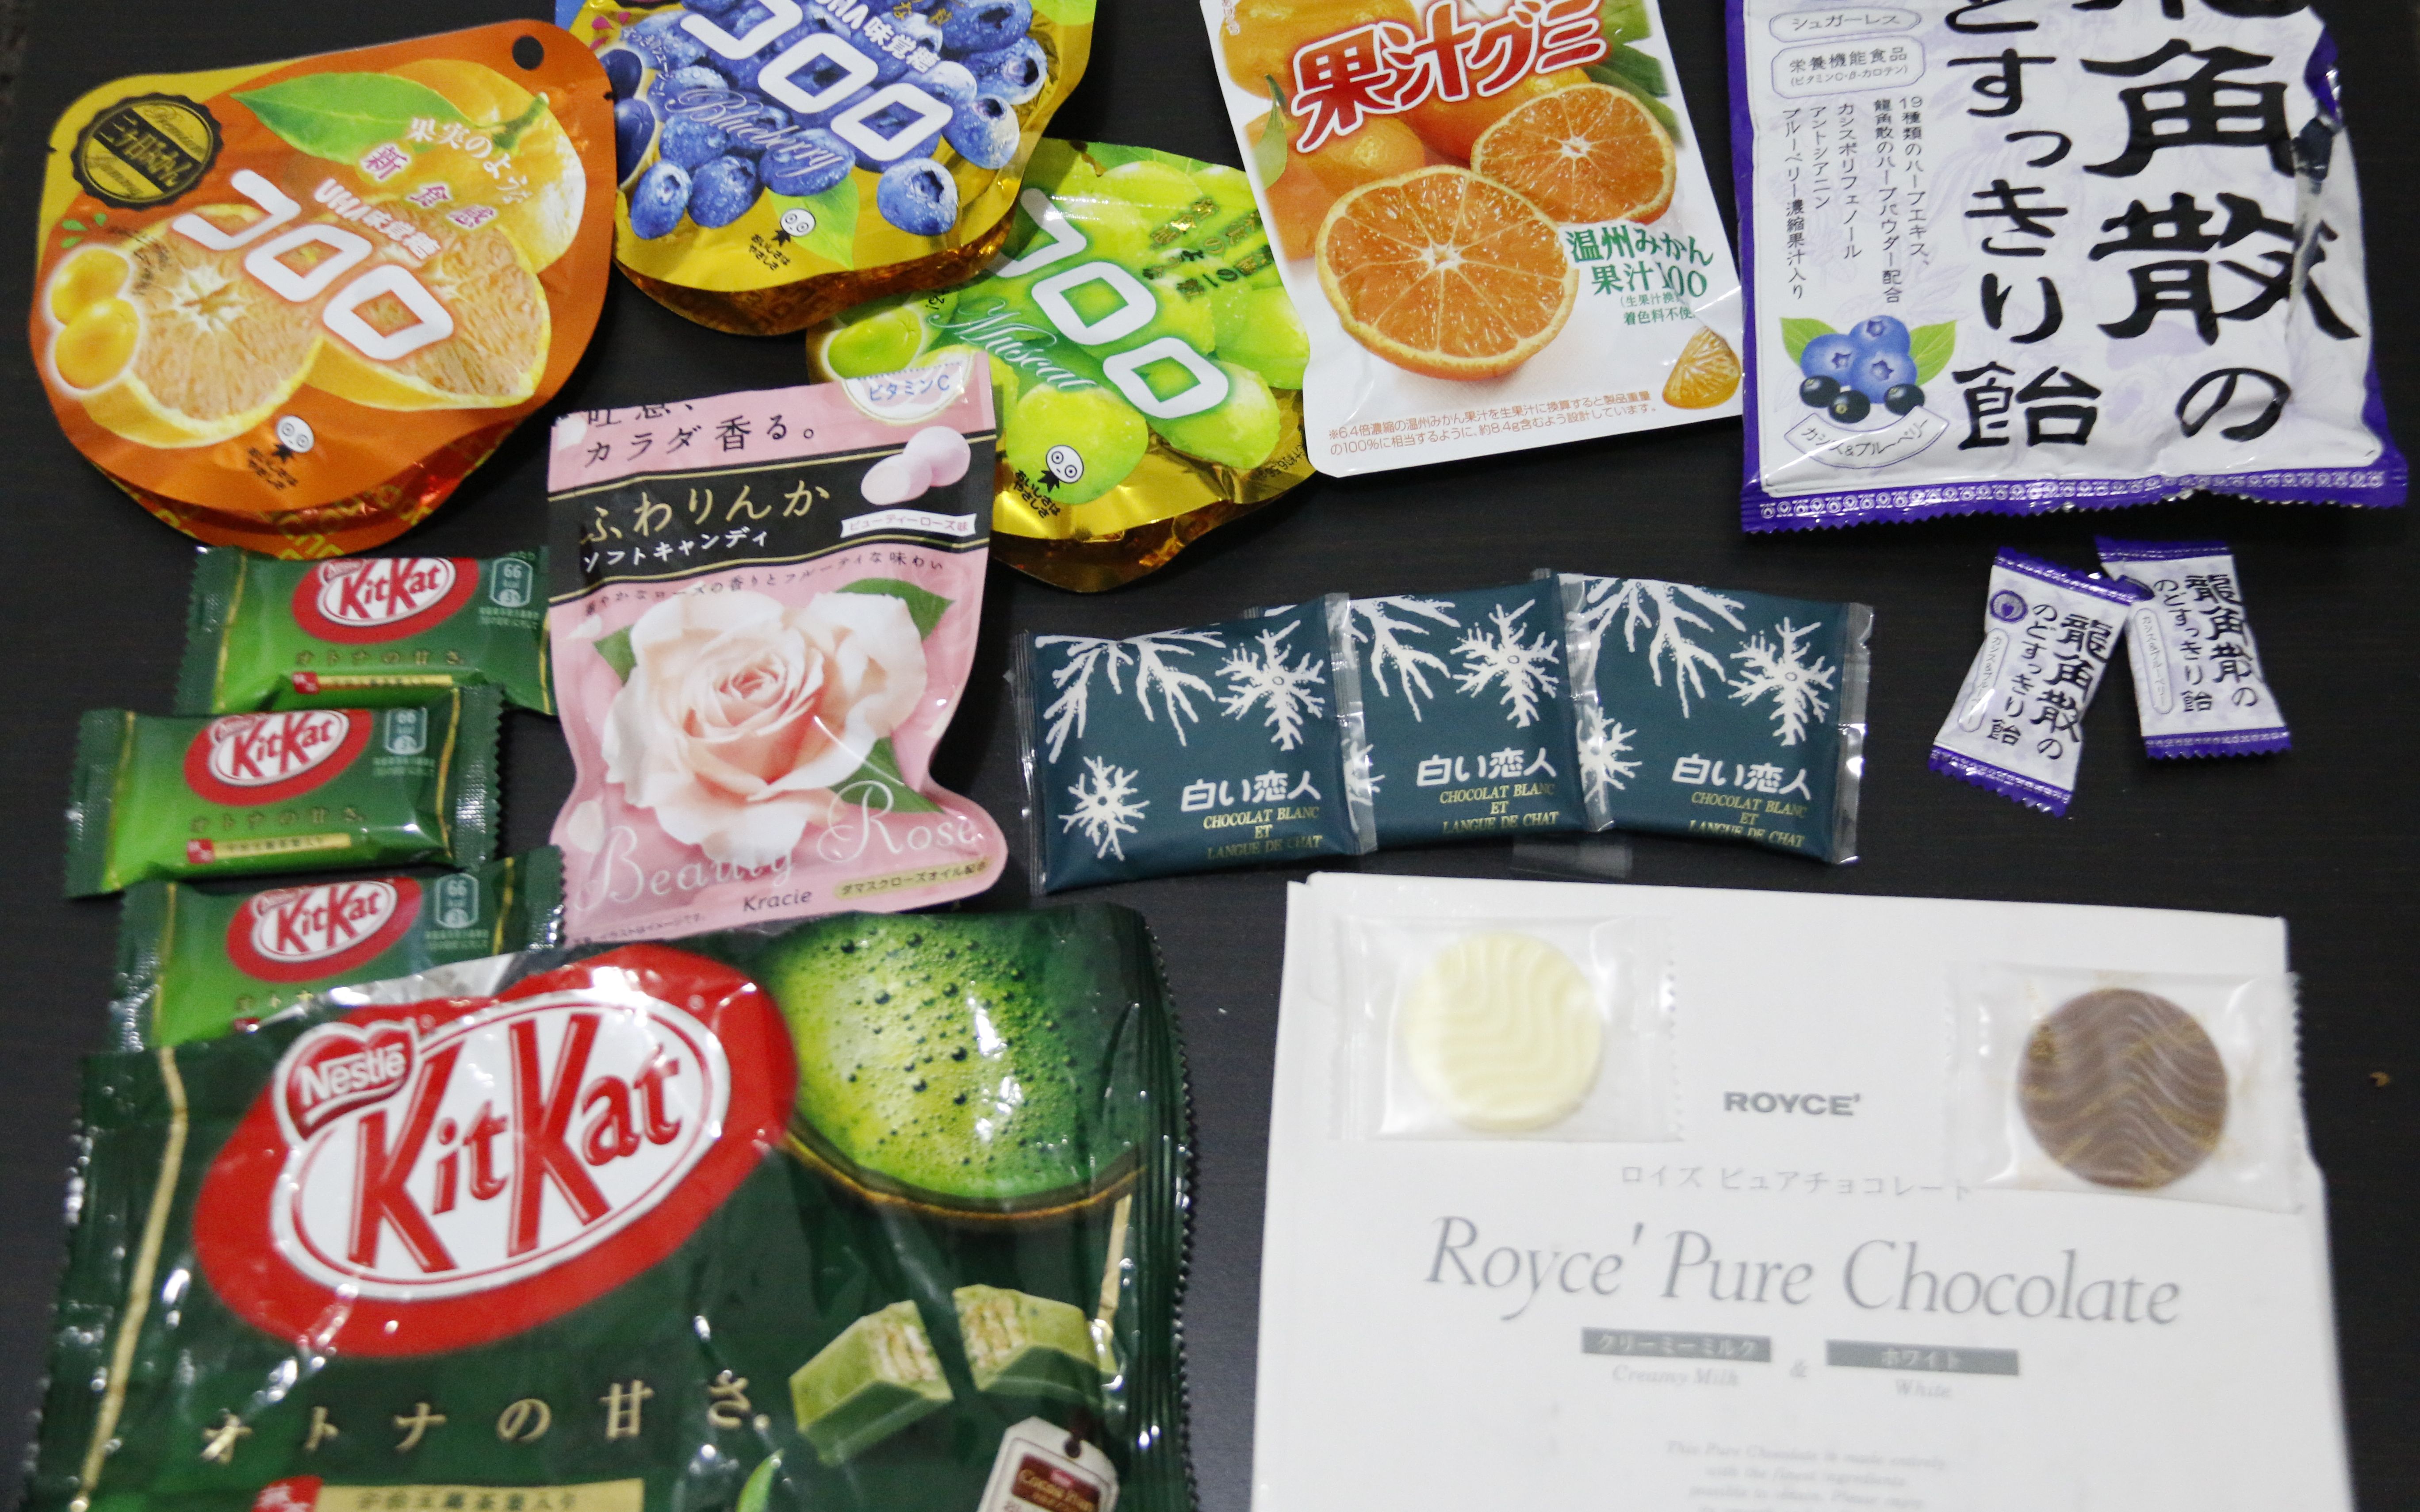 红遍网路的5款日本糖果 | All About Japan